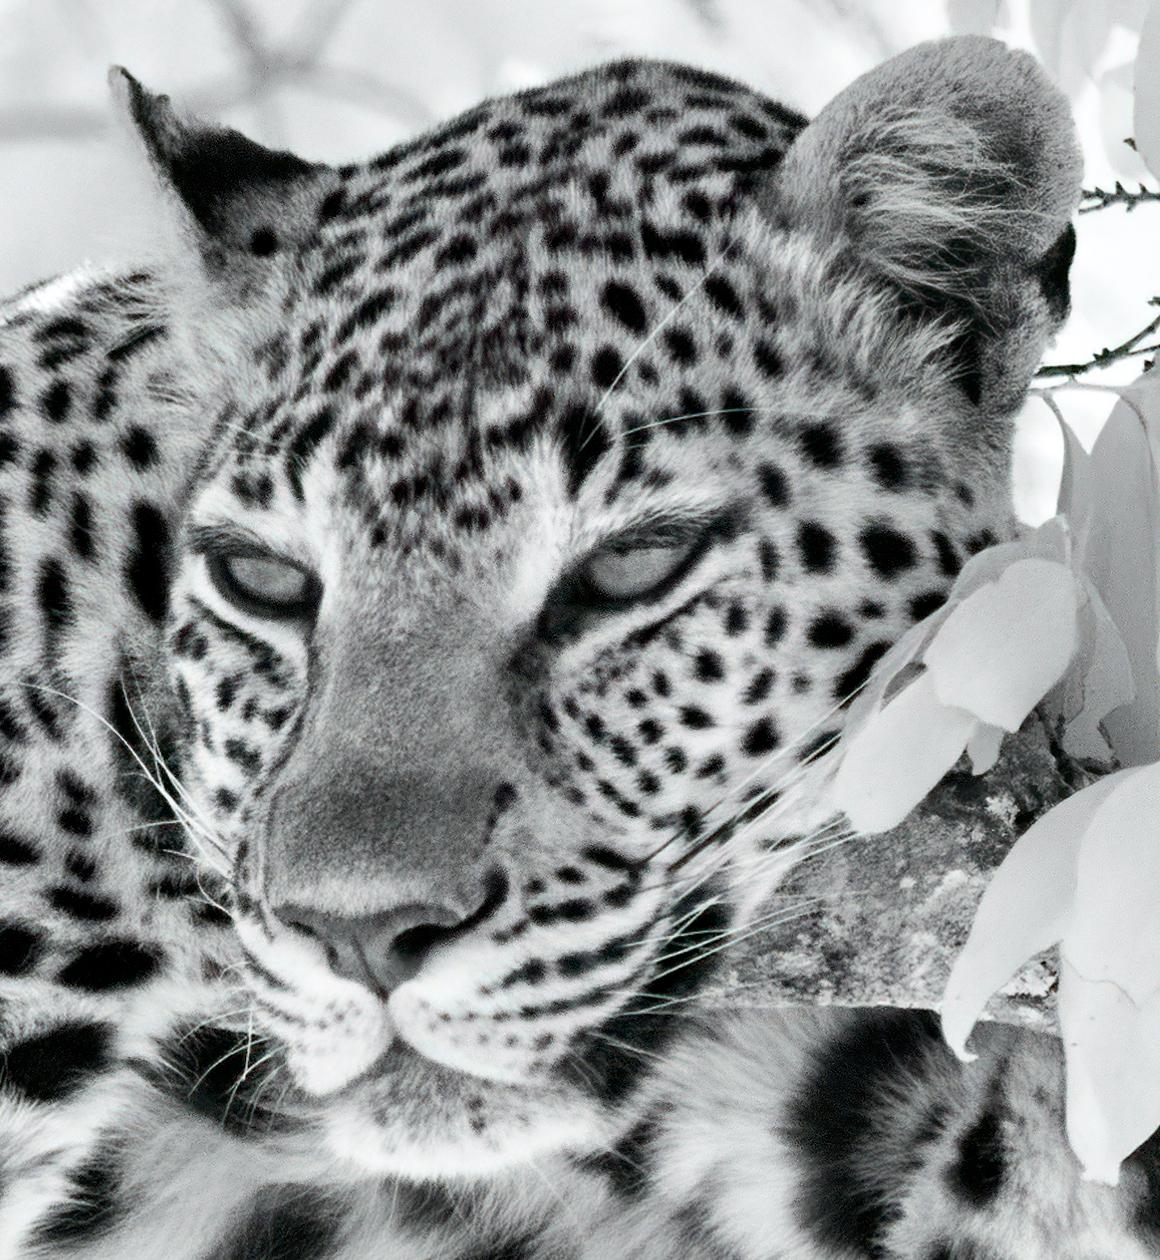 Tier Landschaft Groß Fotografie Leopard Schwarz Weiß Natur Afrika Wildlife – Print von Aditya Dicky Singh